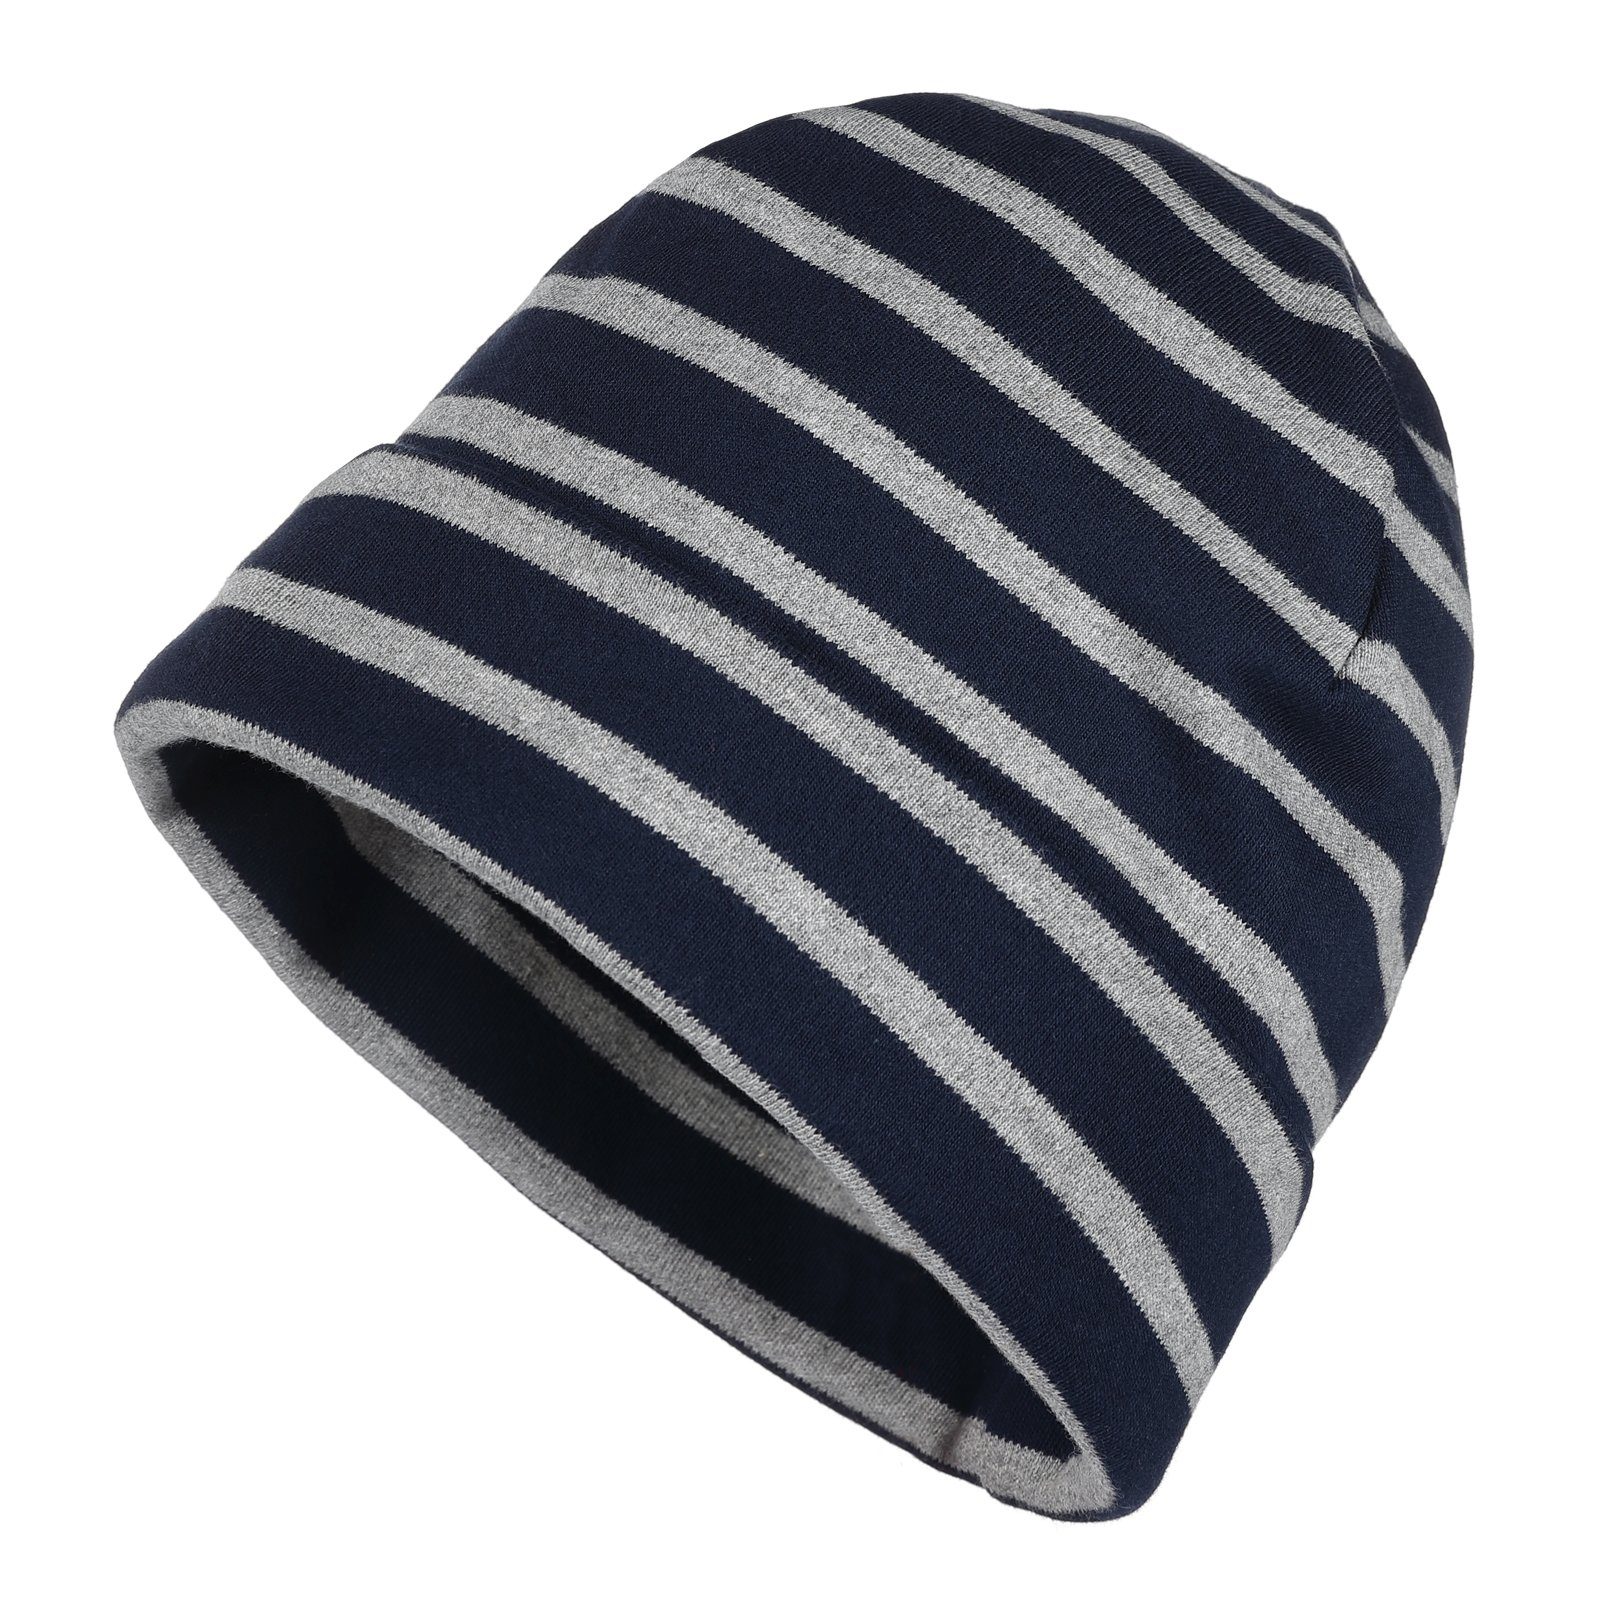 modAS Strickmütze Unisex Mütze Streifen für Kinder & Erwachsene - Ringelmütze Baumwolle (56) blau / grau-melange